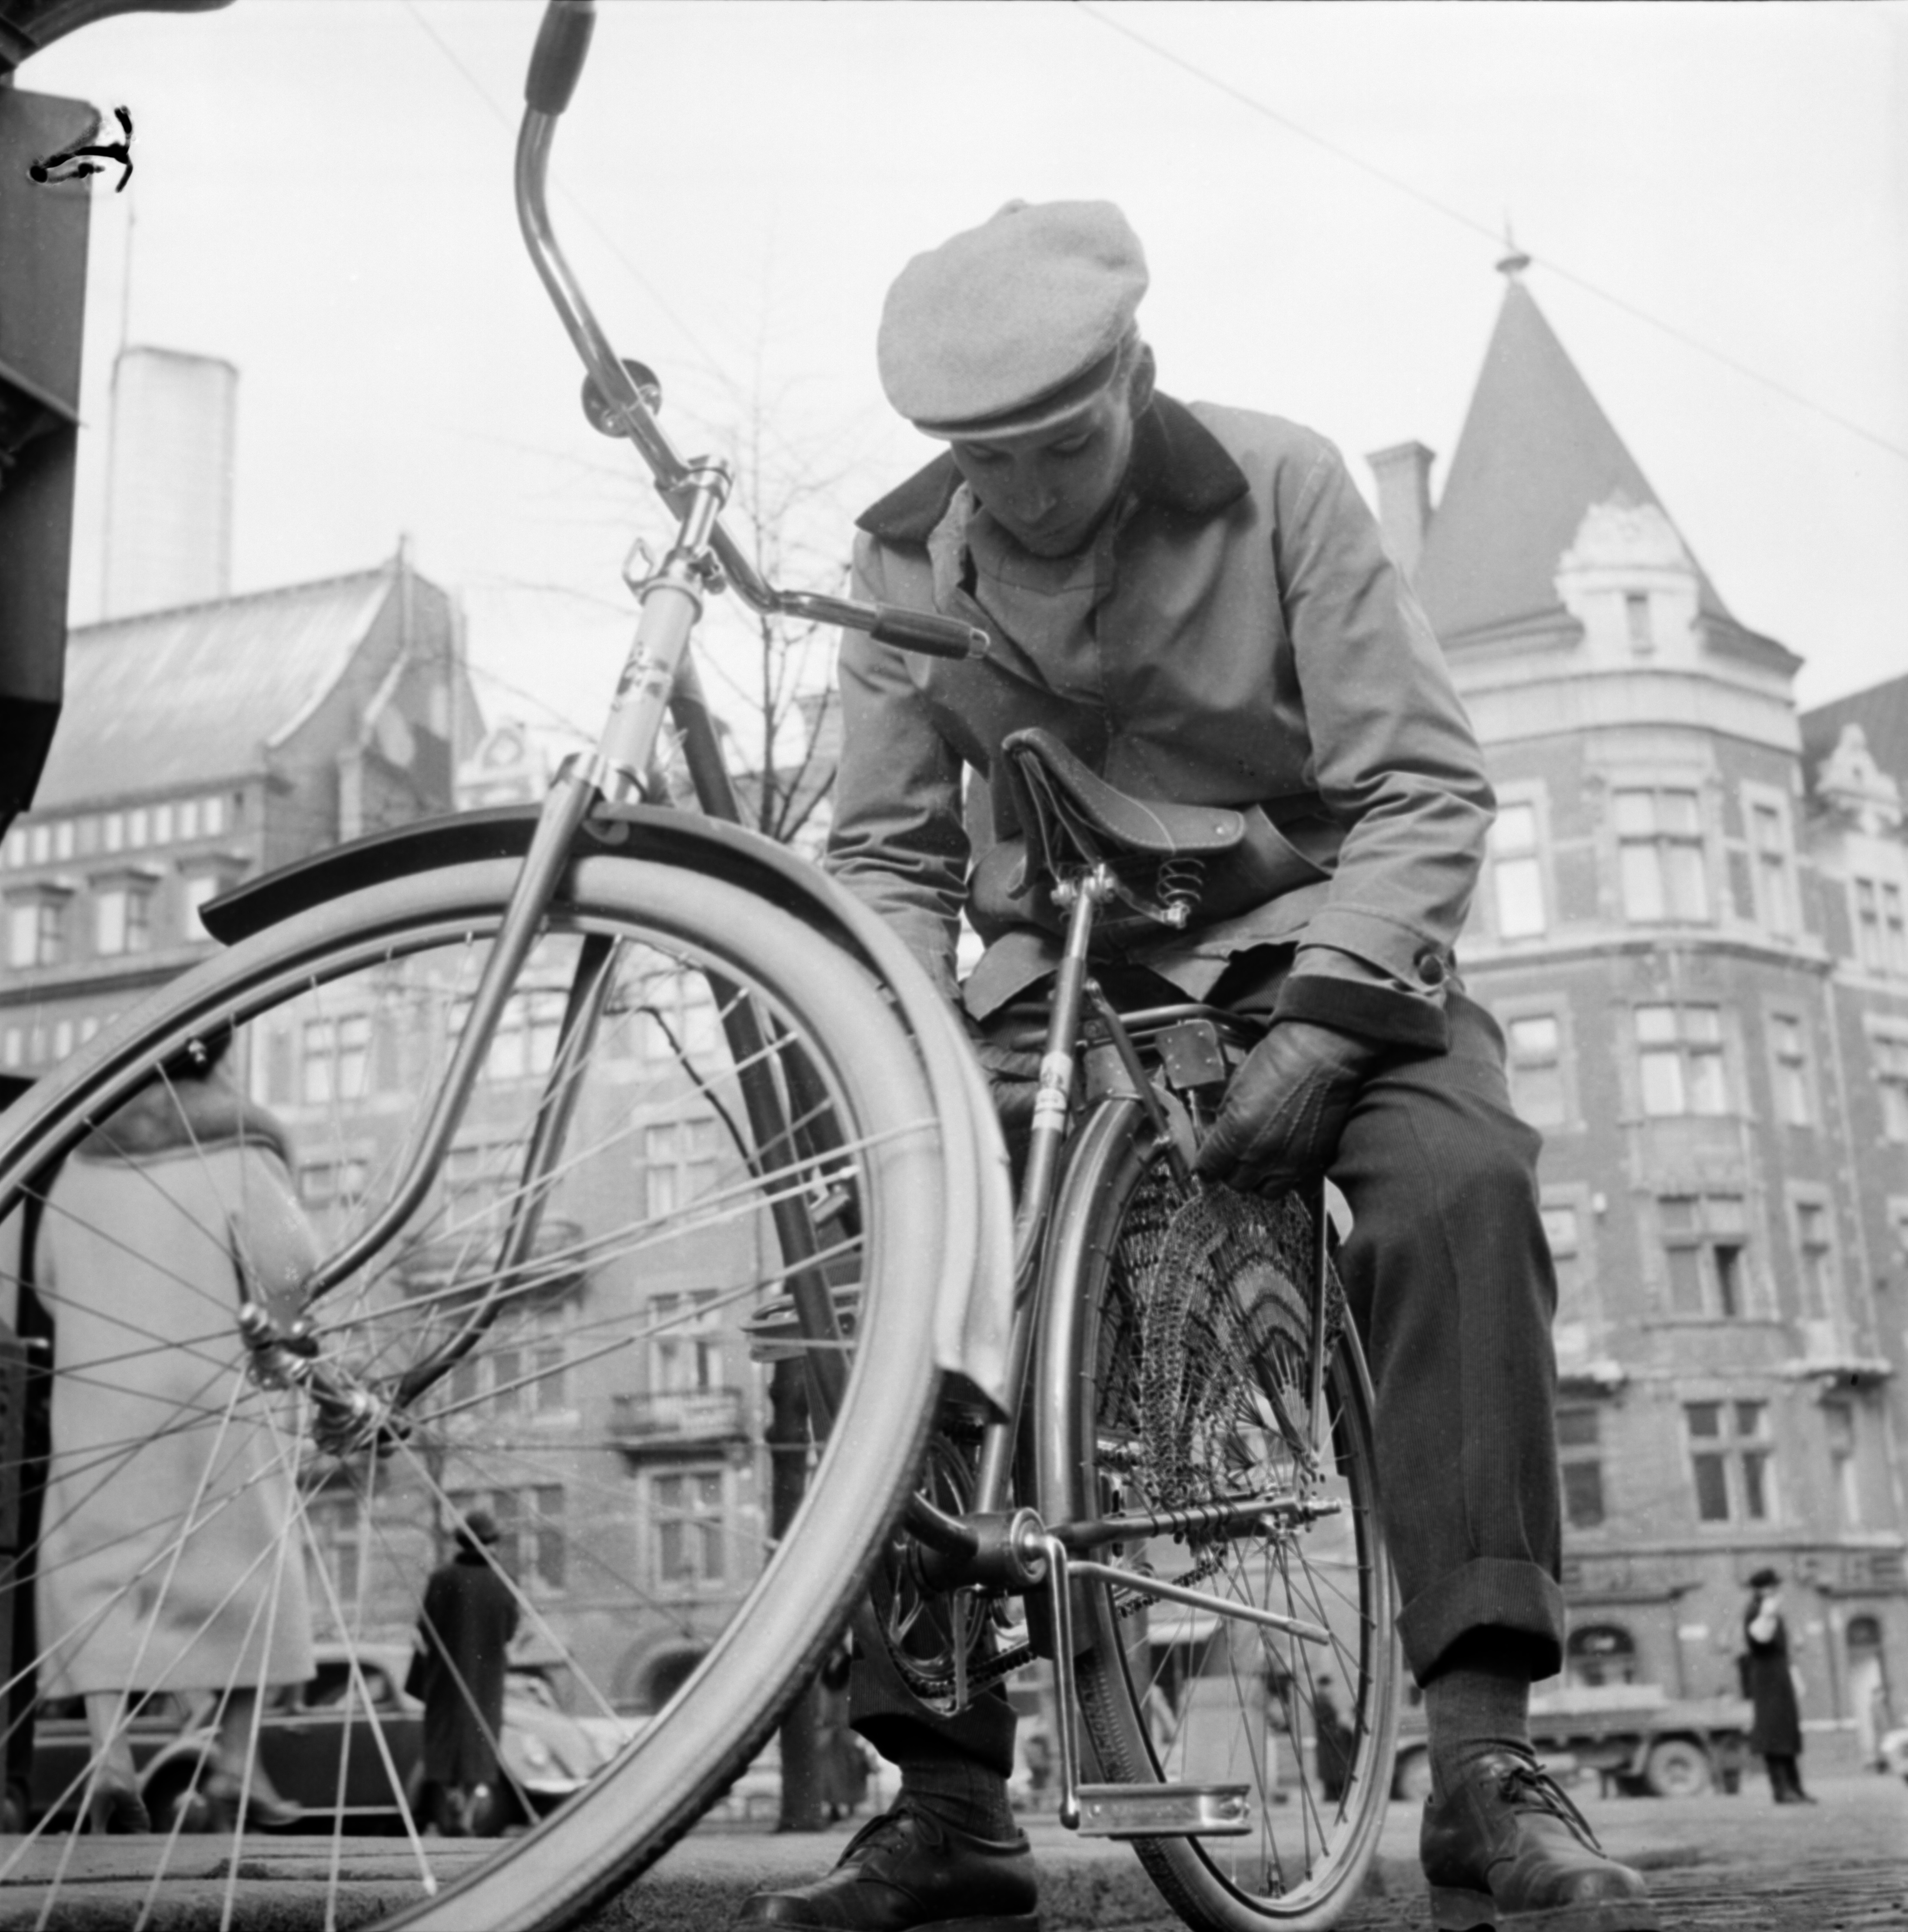  Nuori mies esittelee polkupyöränsä lukkoa Mannerheimintiellä, takana Wulffin kulma. Helsinki, 1958. Suomen valokuvataiteen museo/ Uuden Suomen kokoelma.